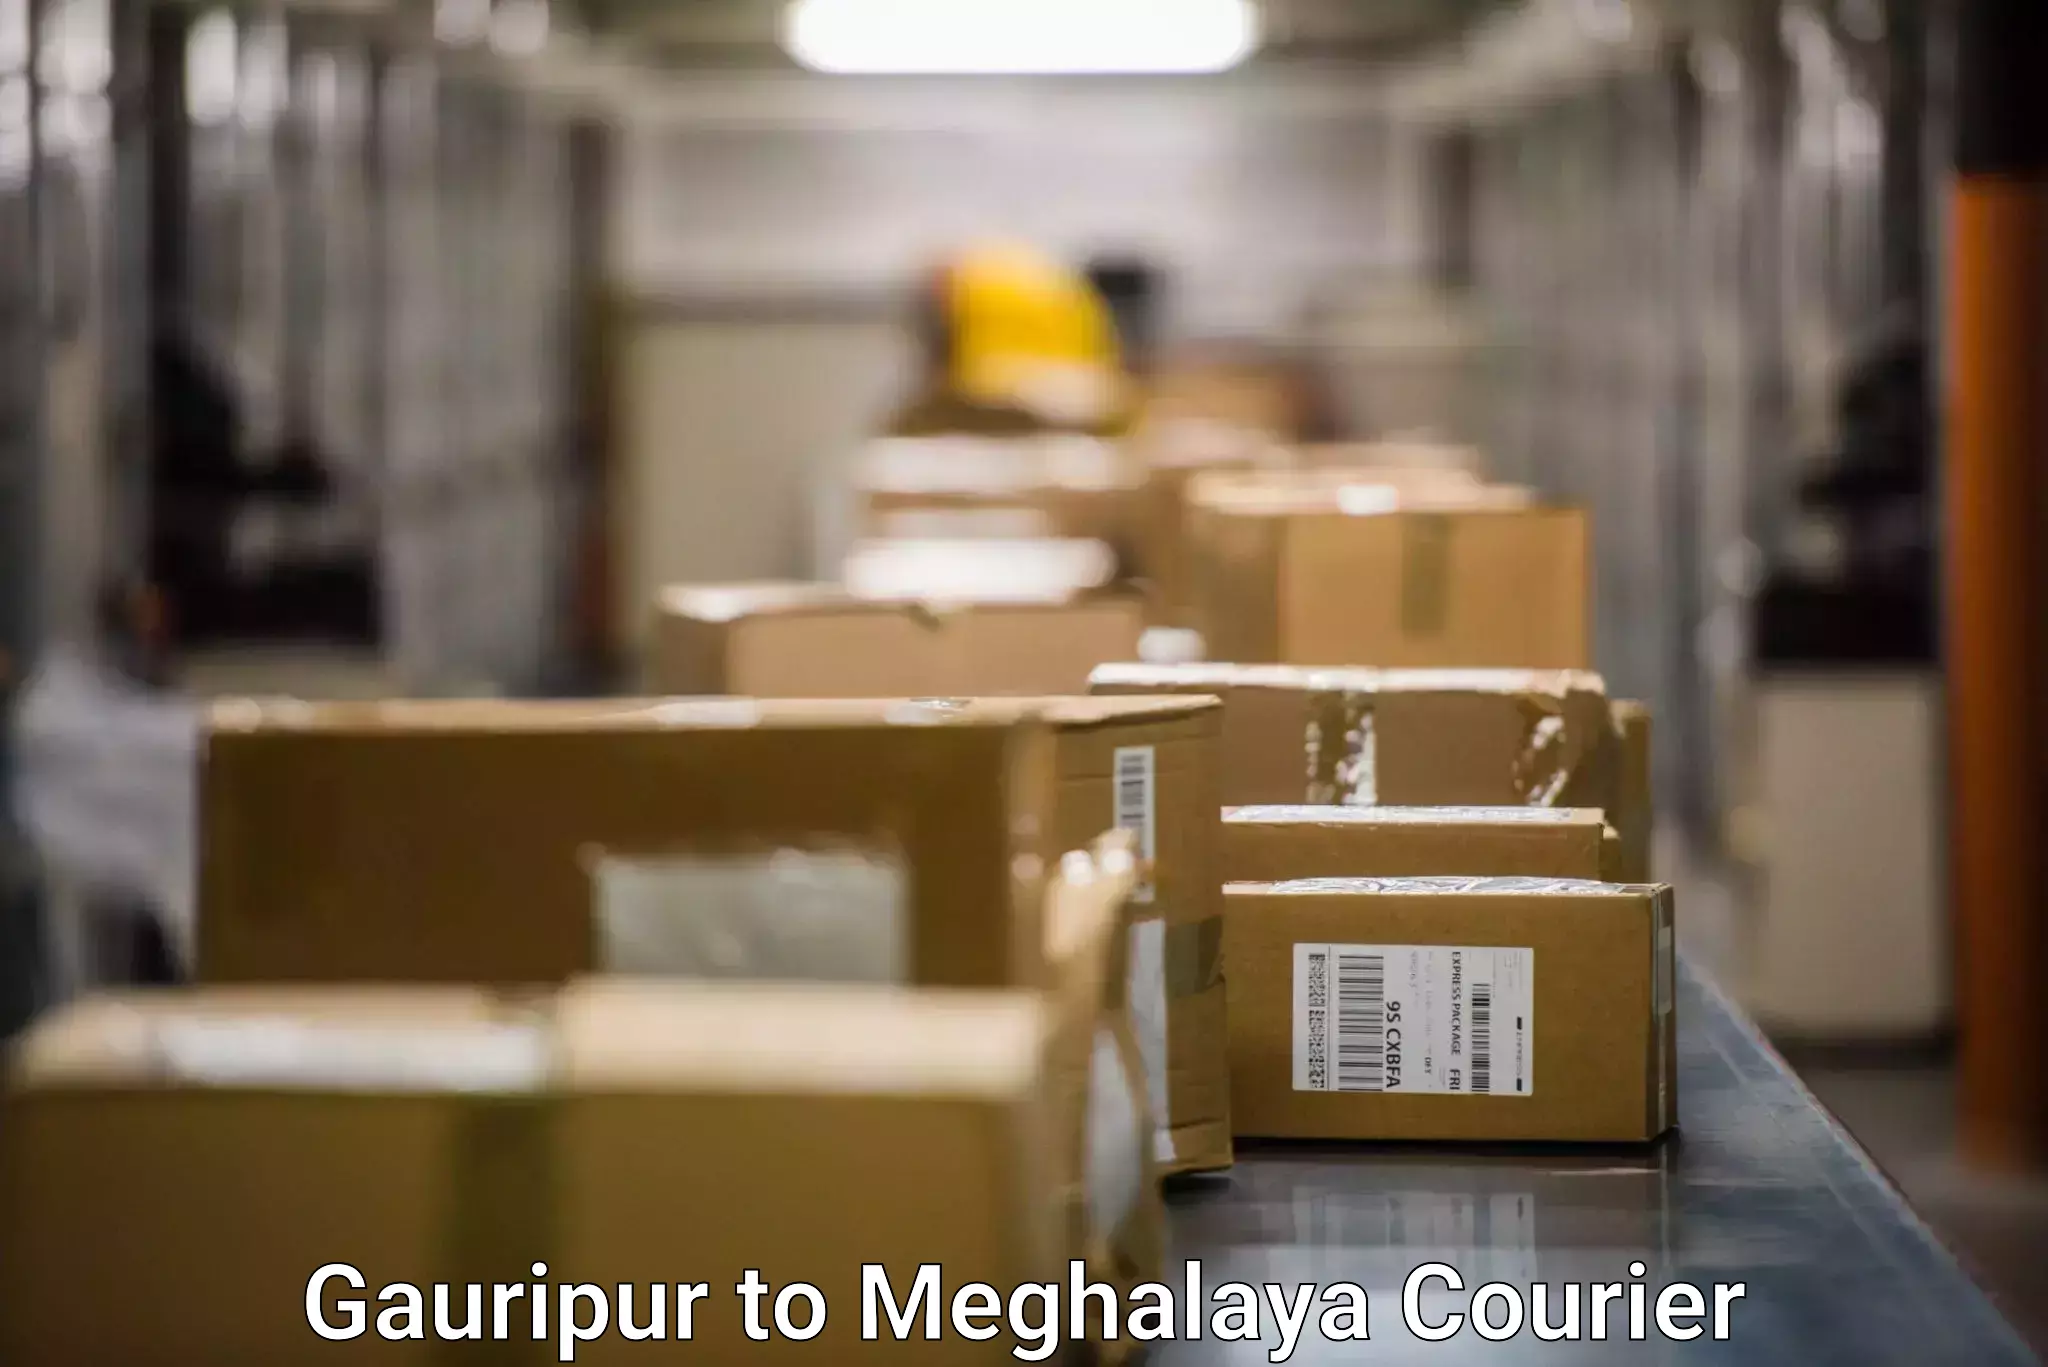 Door-to-door freight service Gauripur to Meghalaya